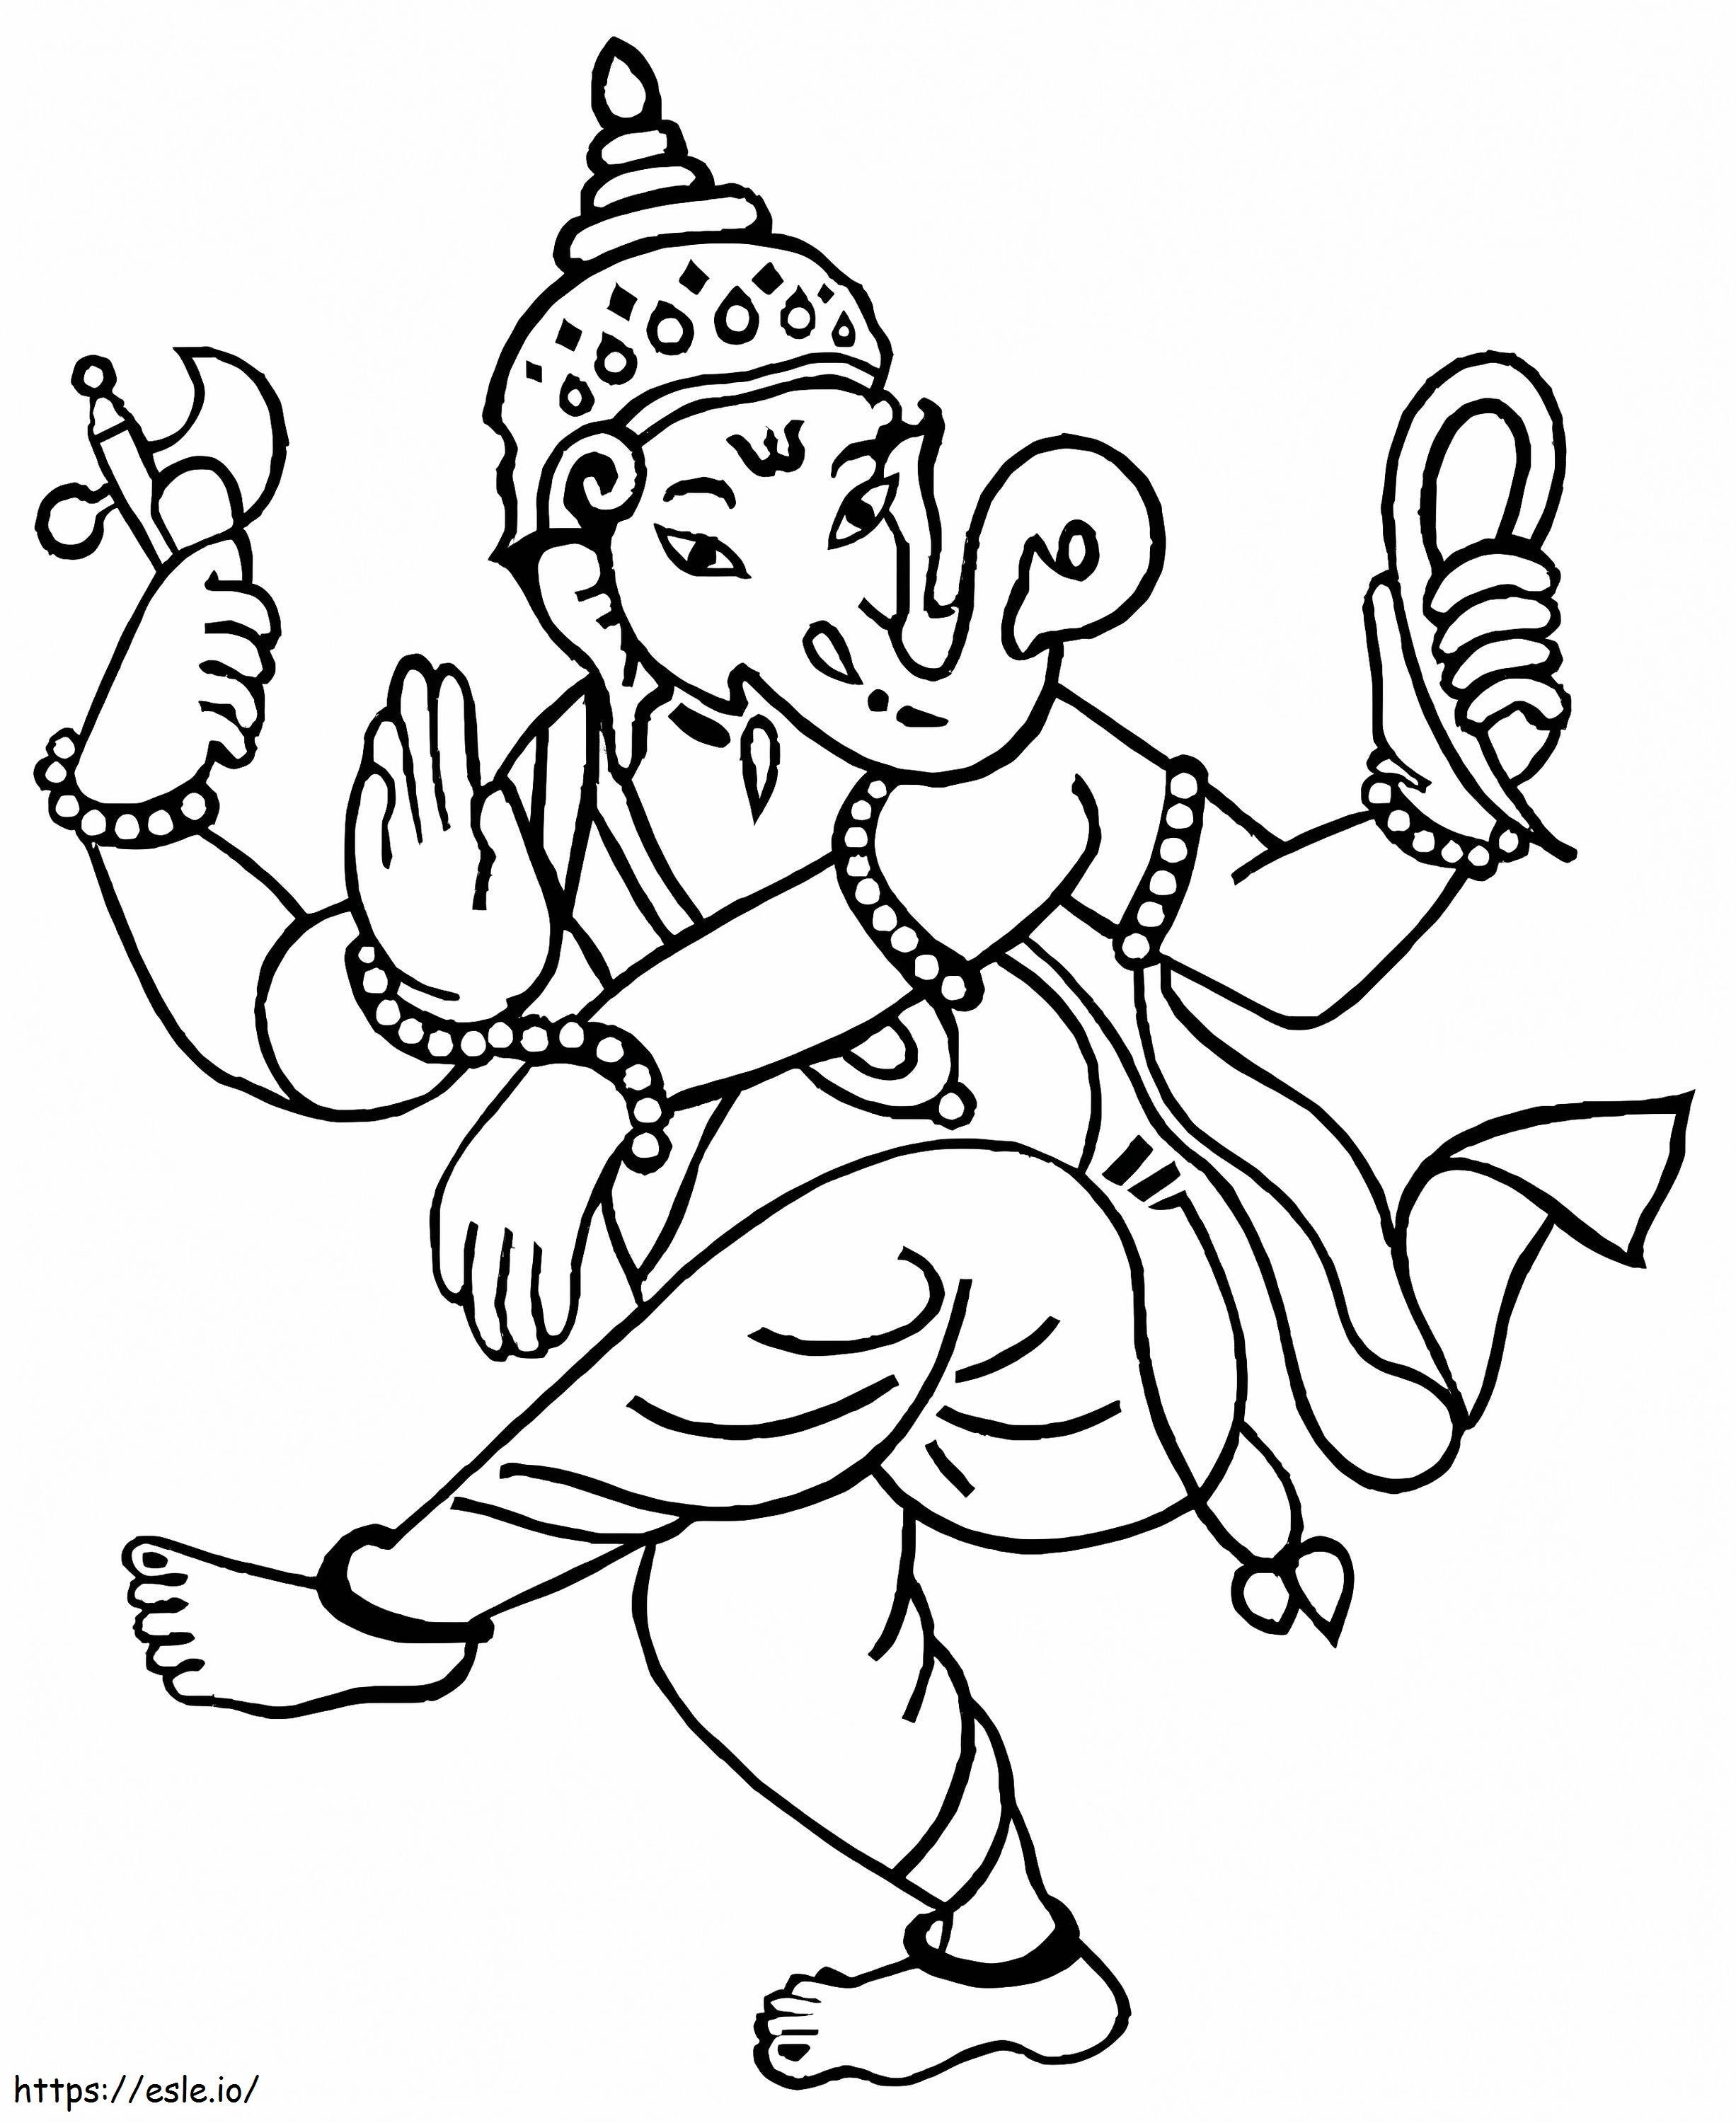 Señor Ganesha 3 para colorear